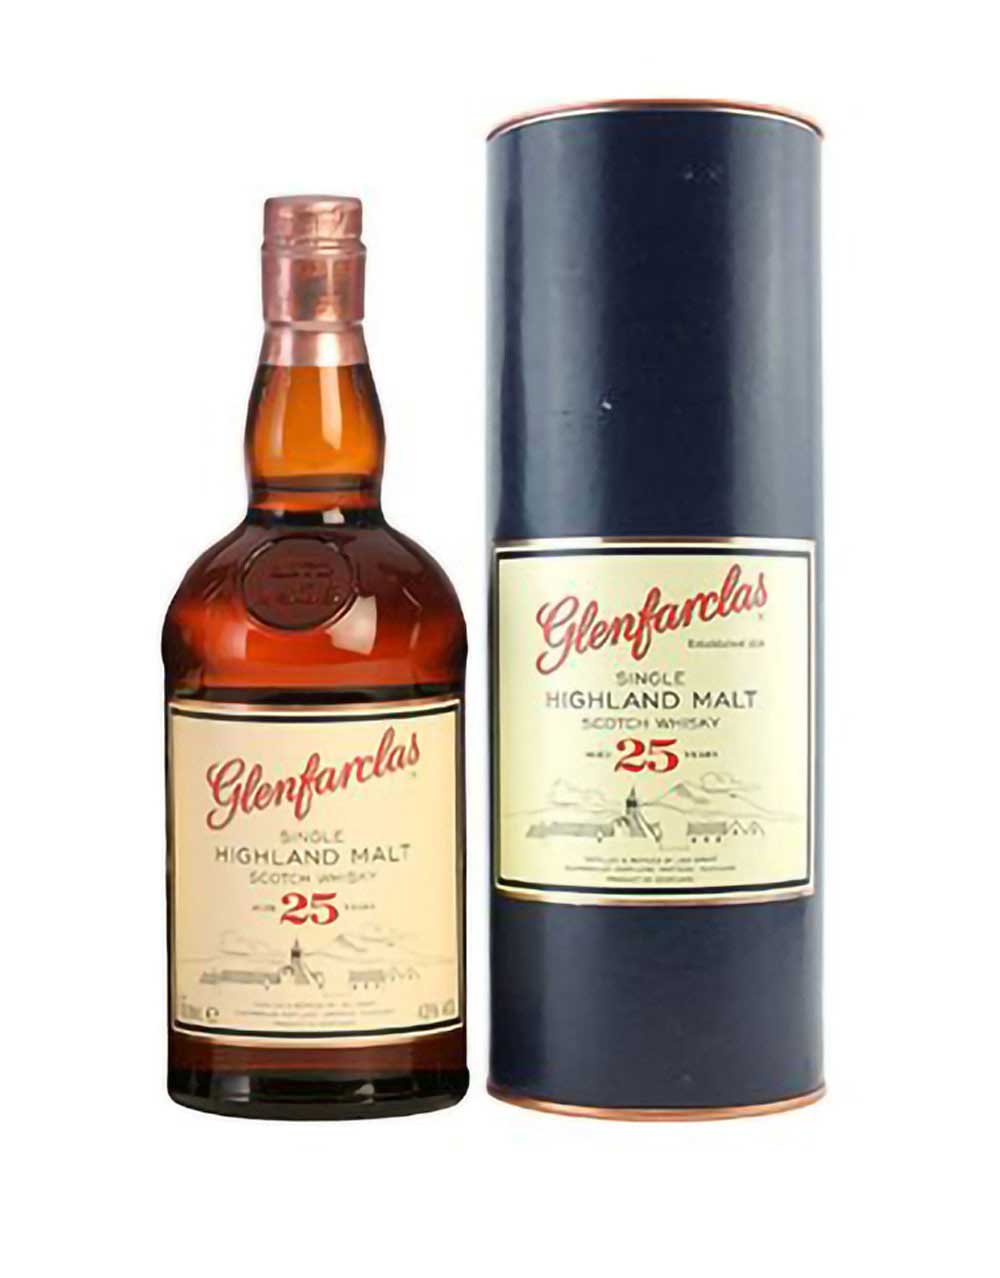 Glenfarclas 25 Year Old Single Malt Scotch Whisky